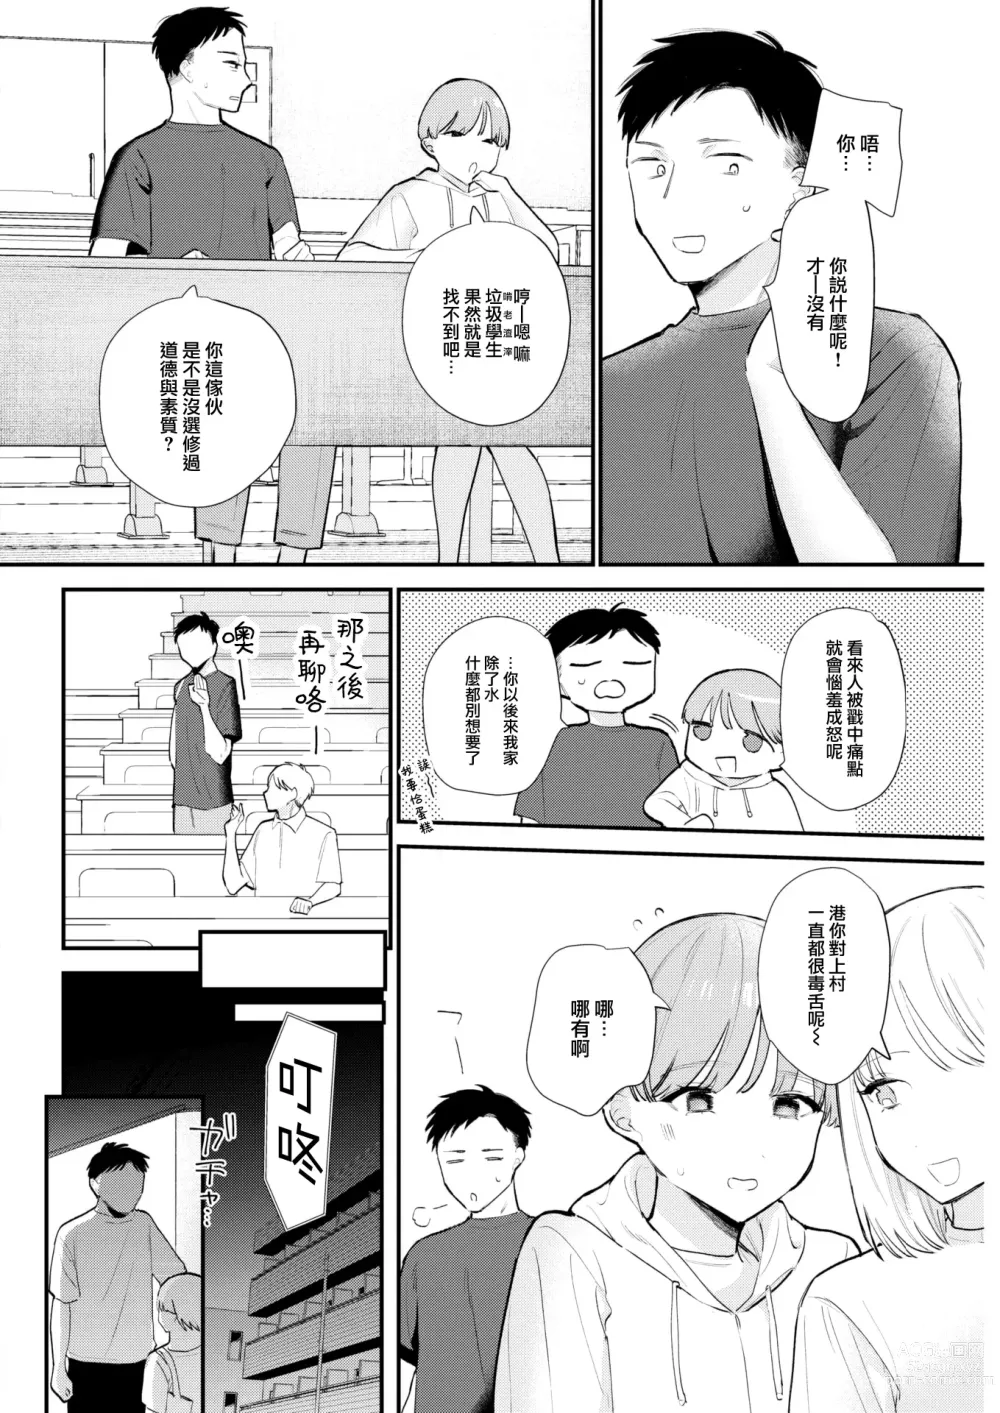 Page 3 of manga Shitagokoro